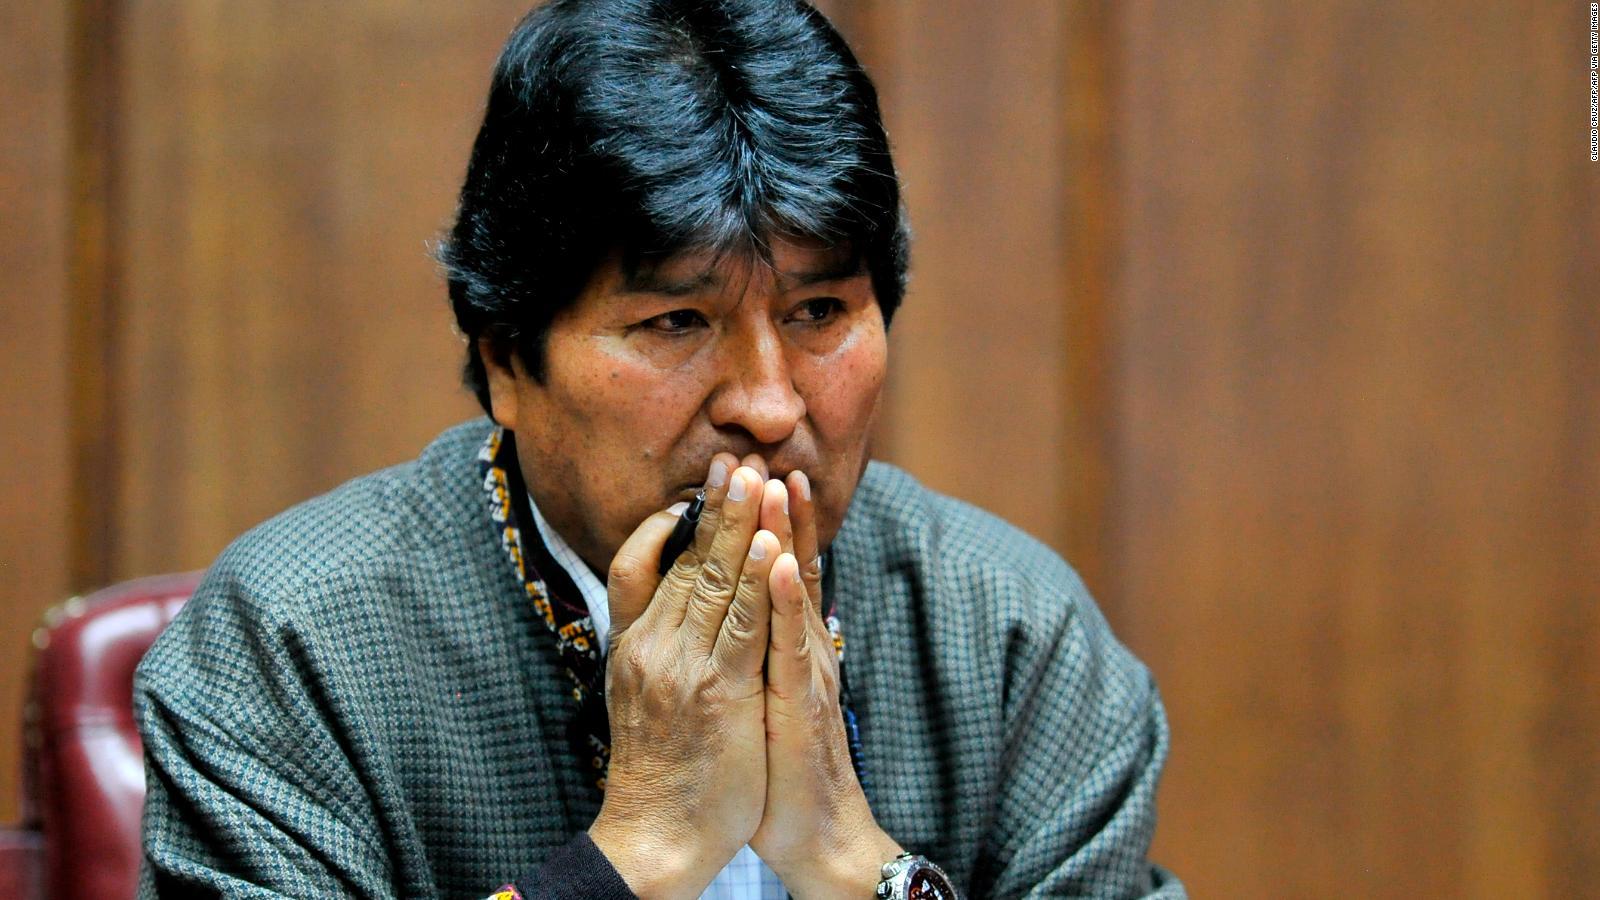 Gira orden de Captura contra Evo Morales